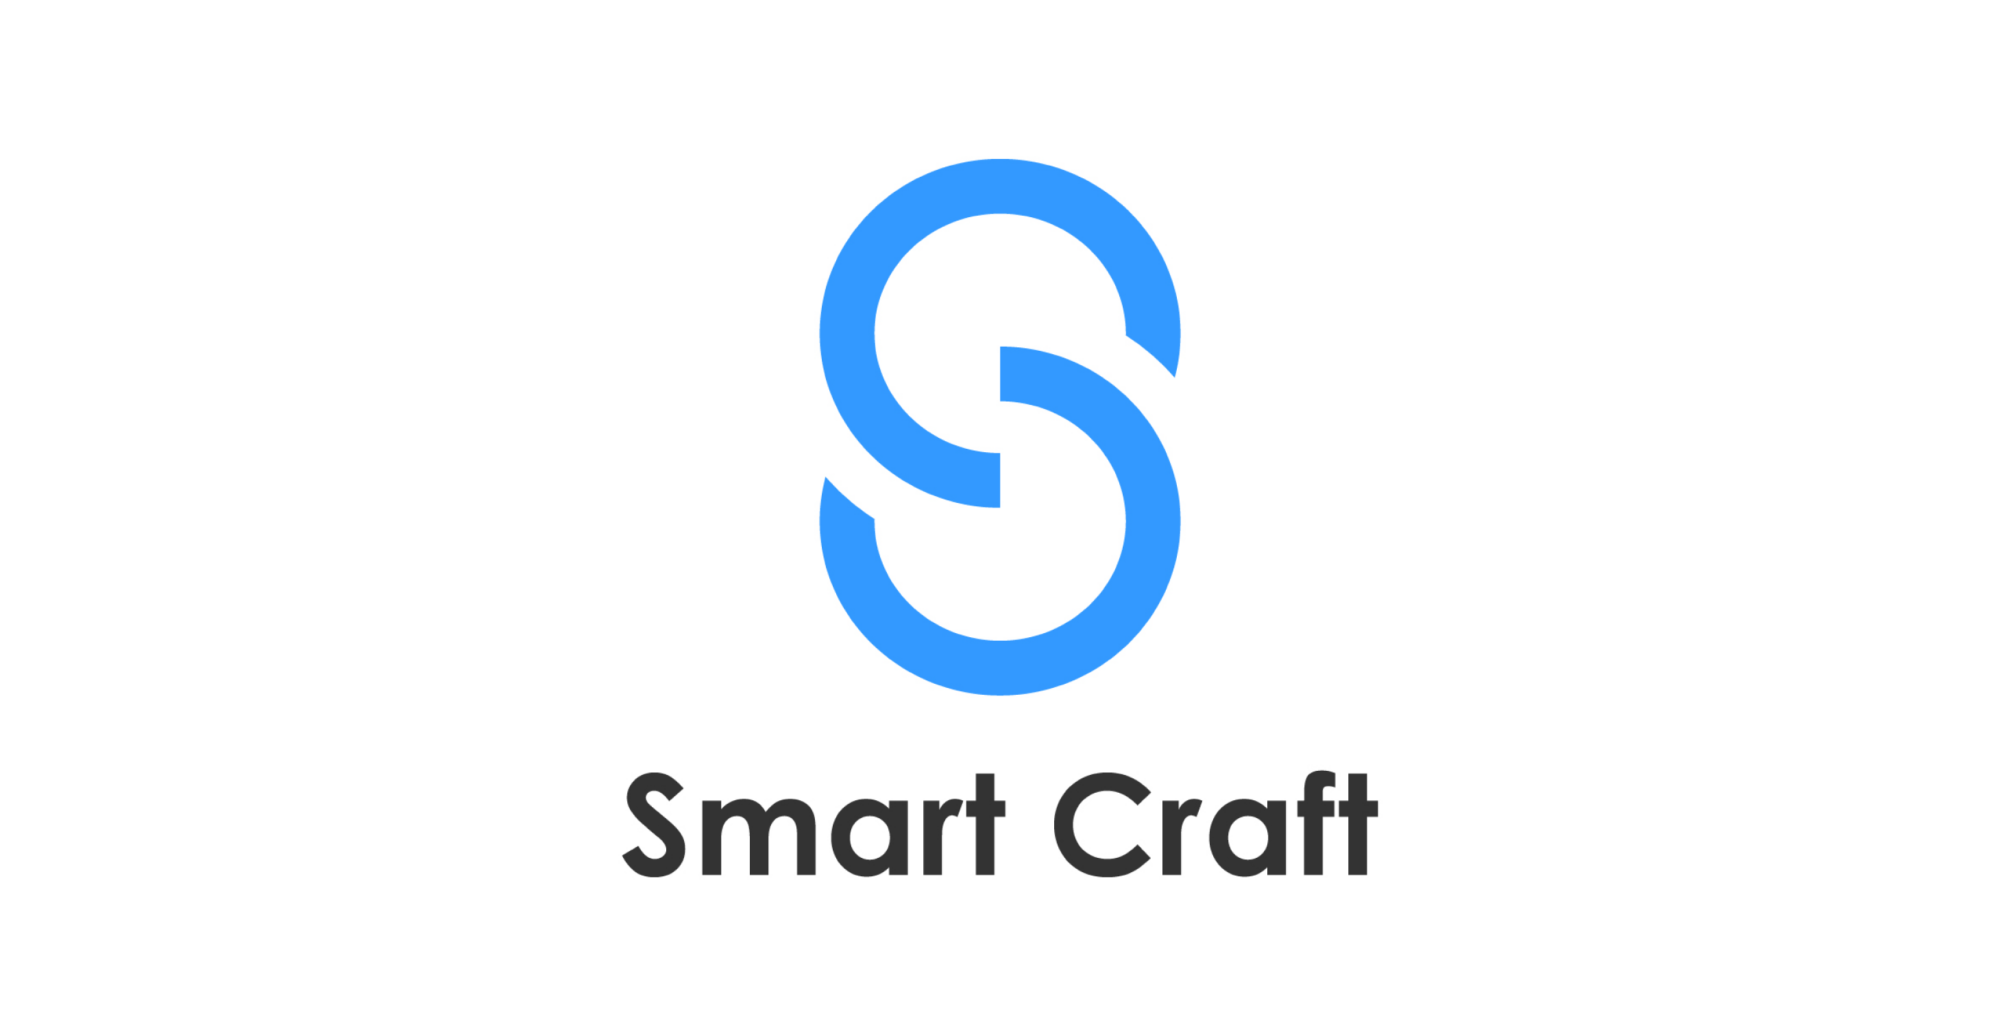 Smart Craft